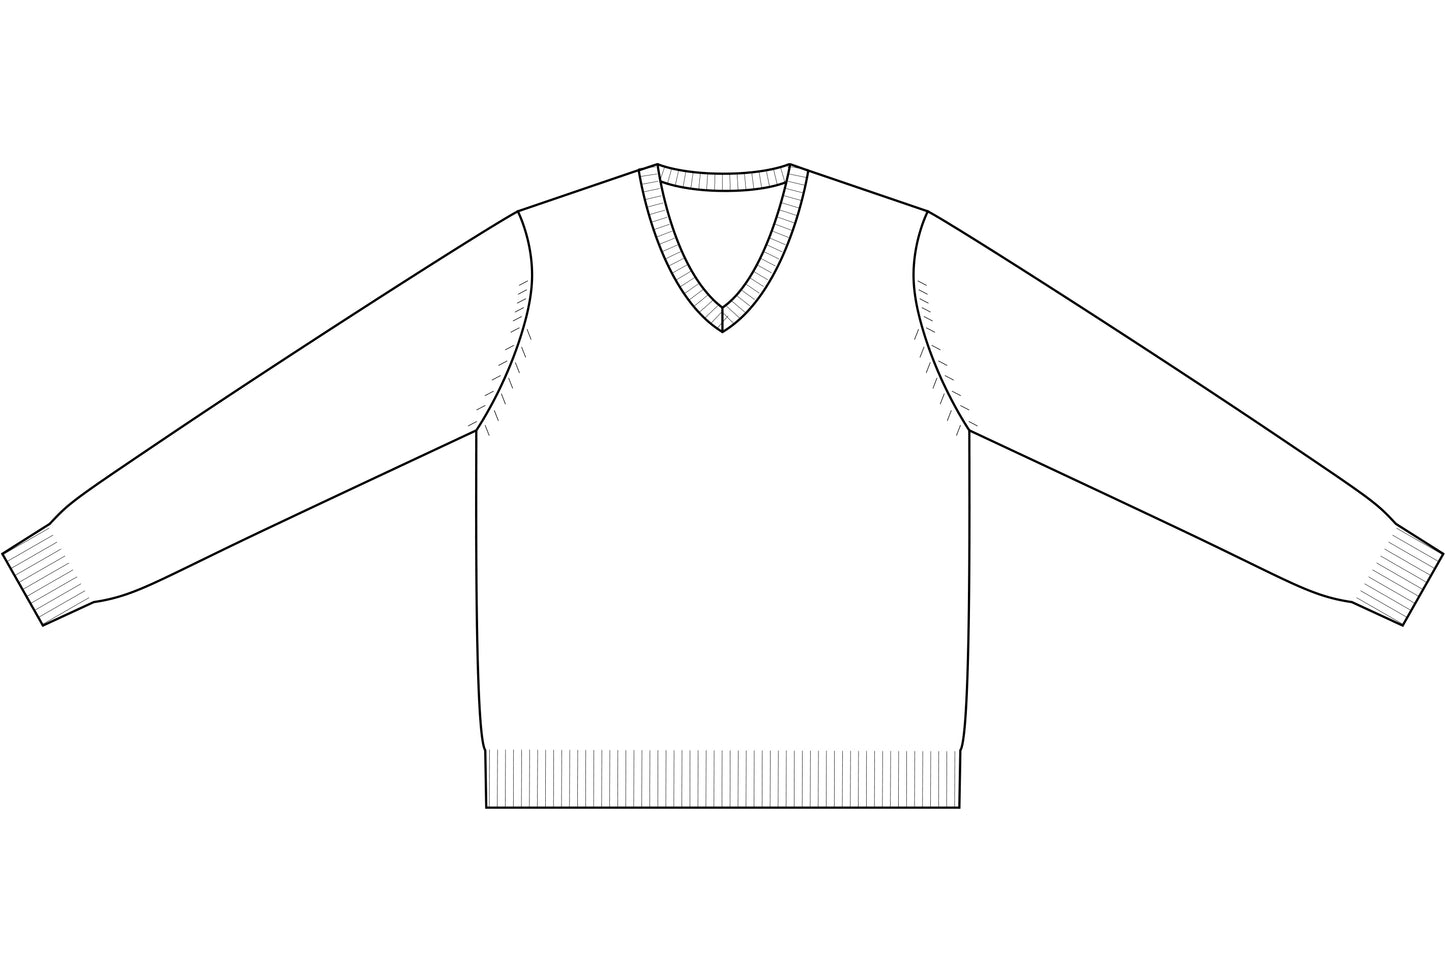 Pure Cashmere V-Neck Pullover